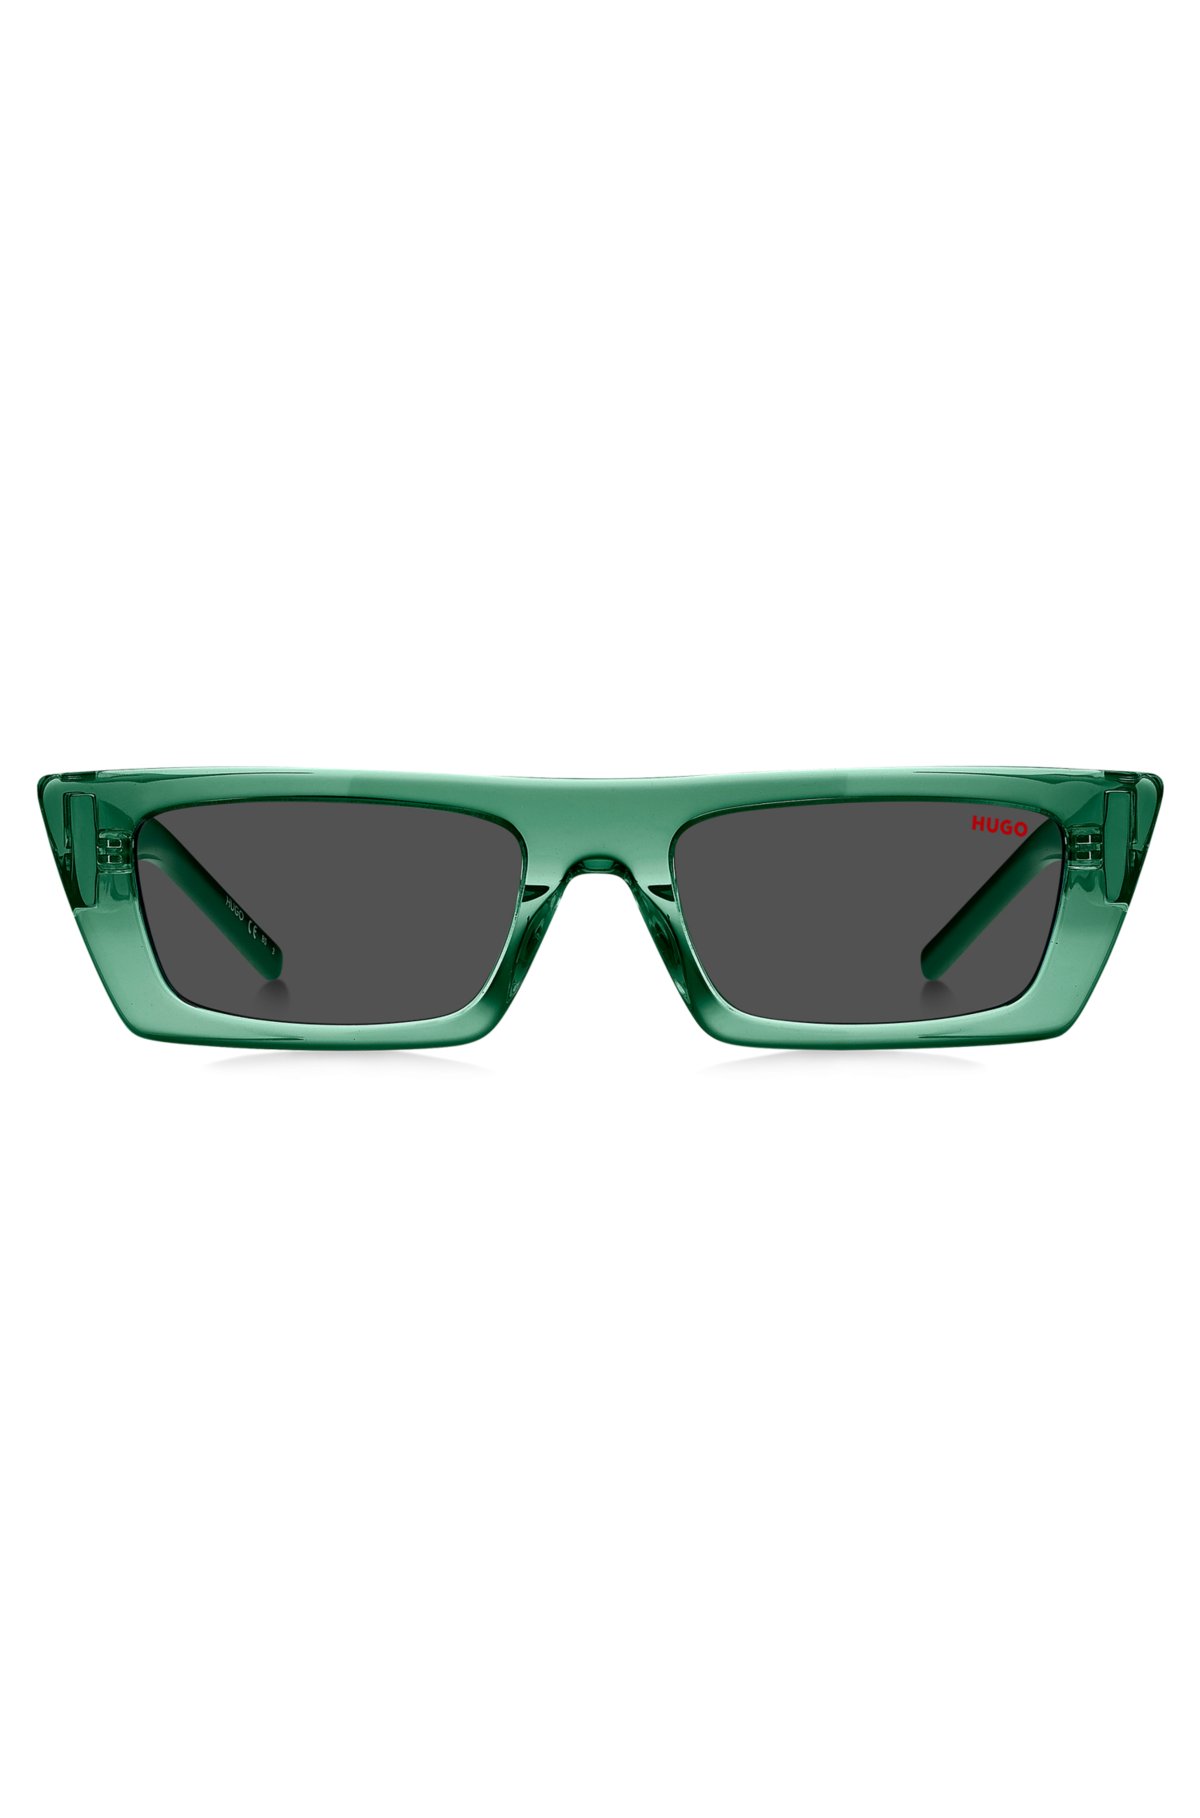 Louis Vuitton Green Tone/ Green Square Montgomery Sunglasses